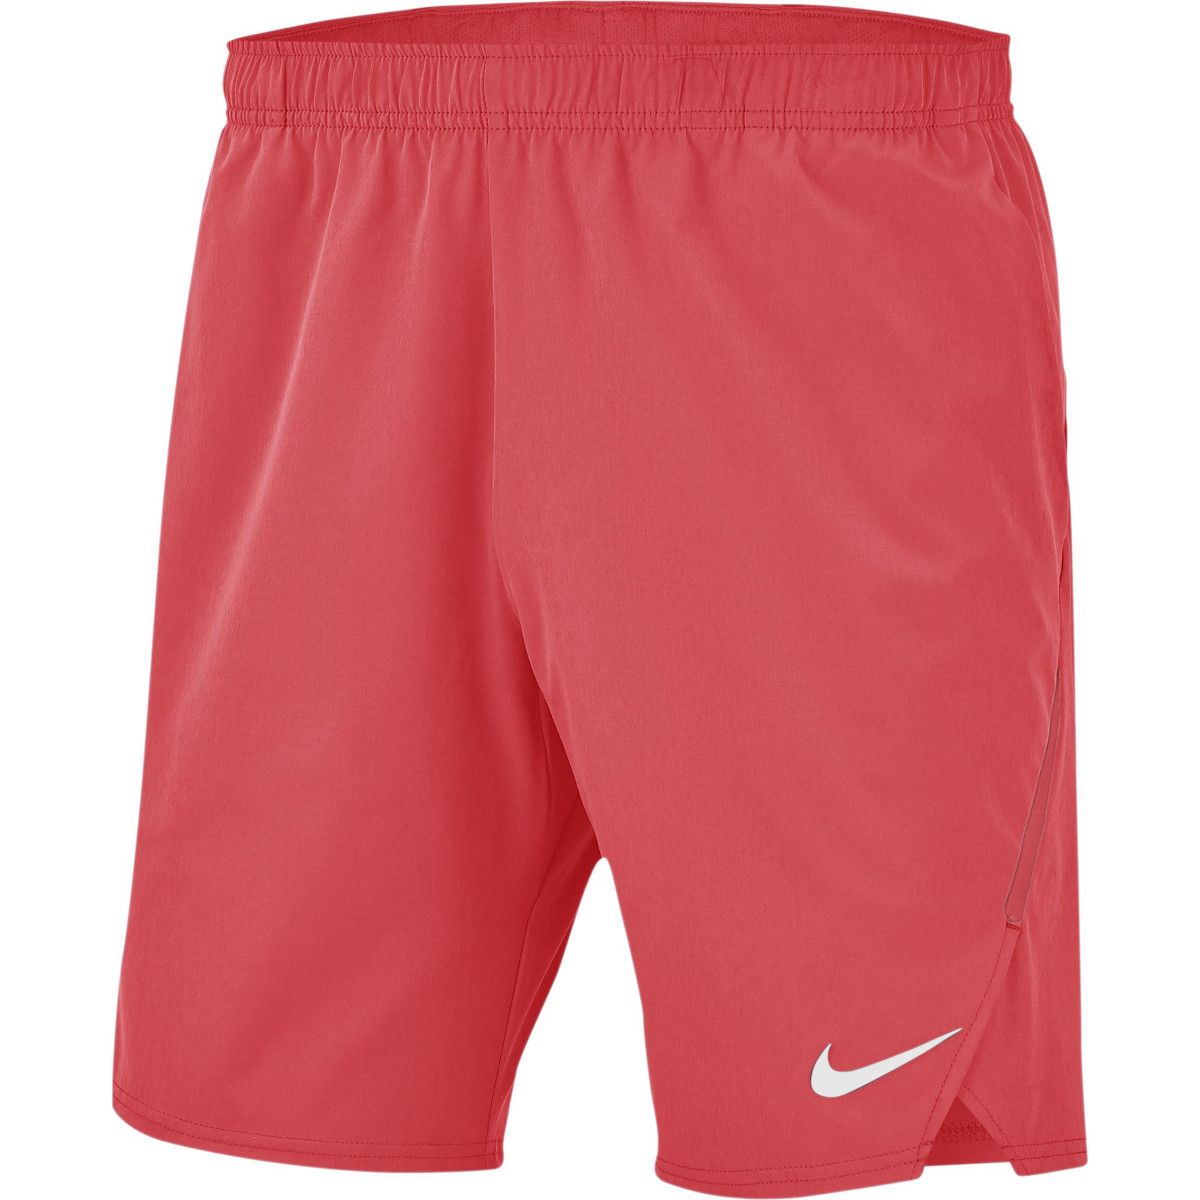 NikeCourt Flex Ace 9 Men's Tennis Shorts 887515-850